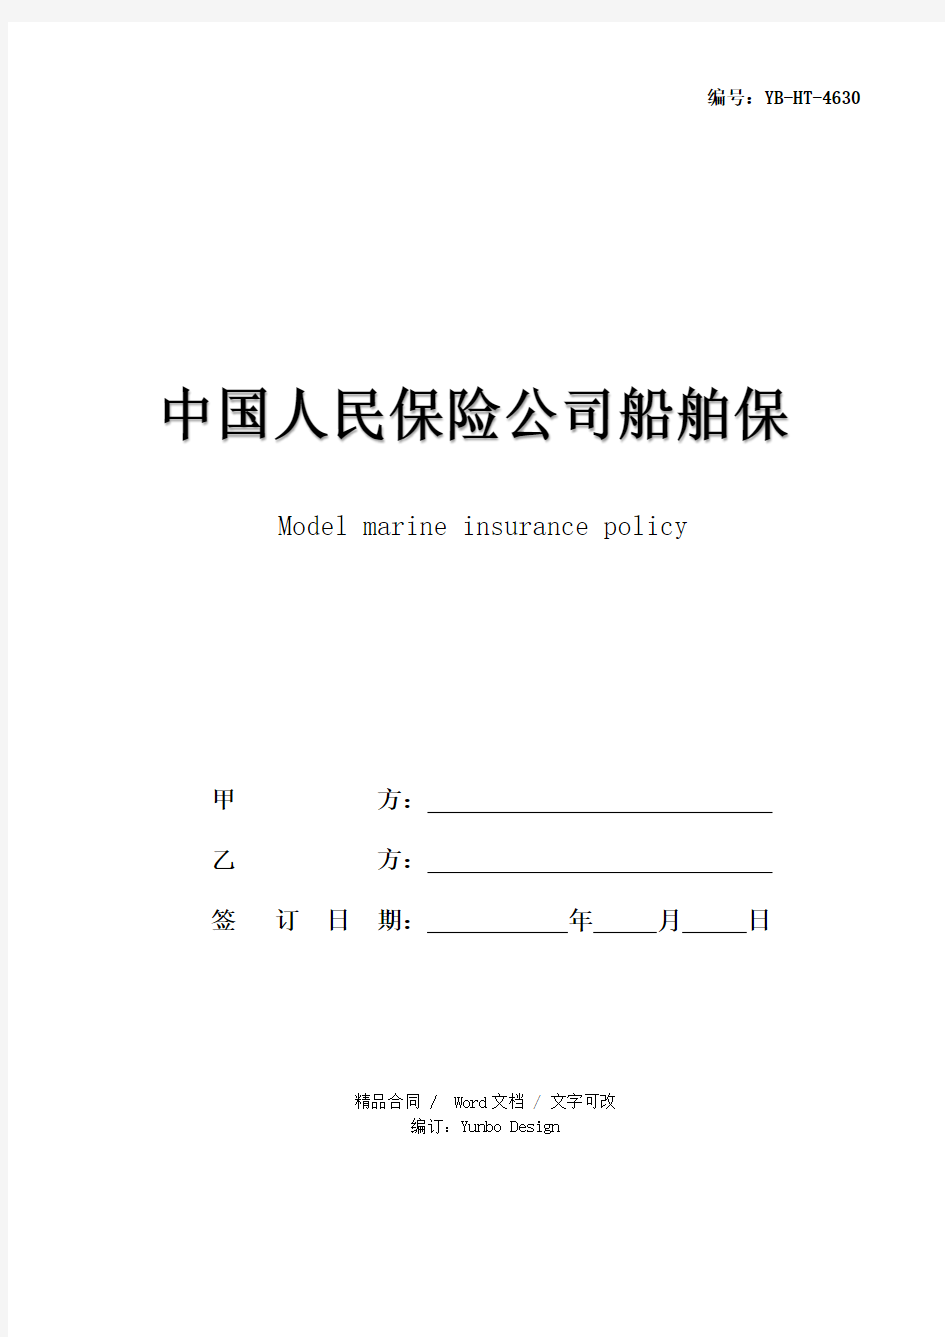 中国人民保险公司船舶保险单范本